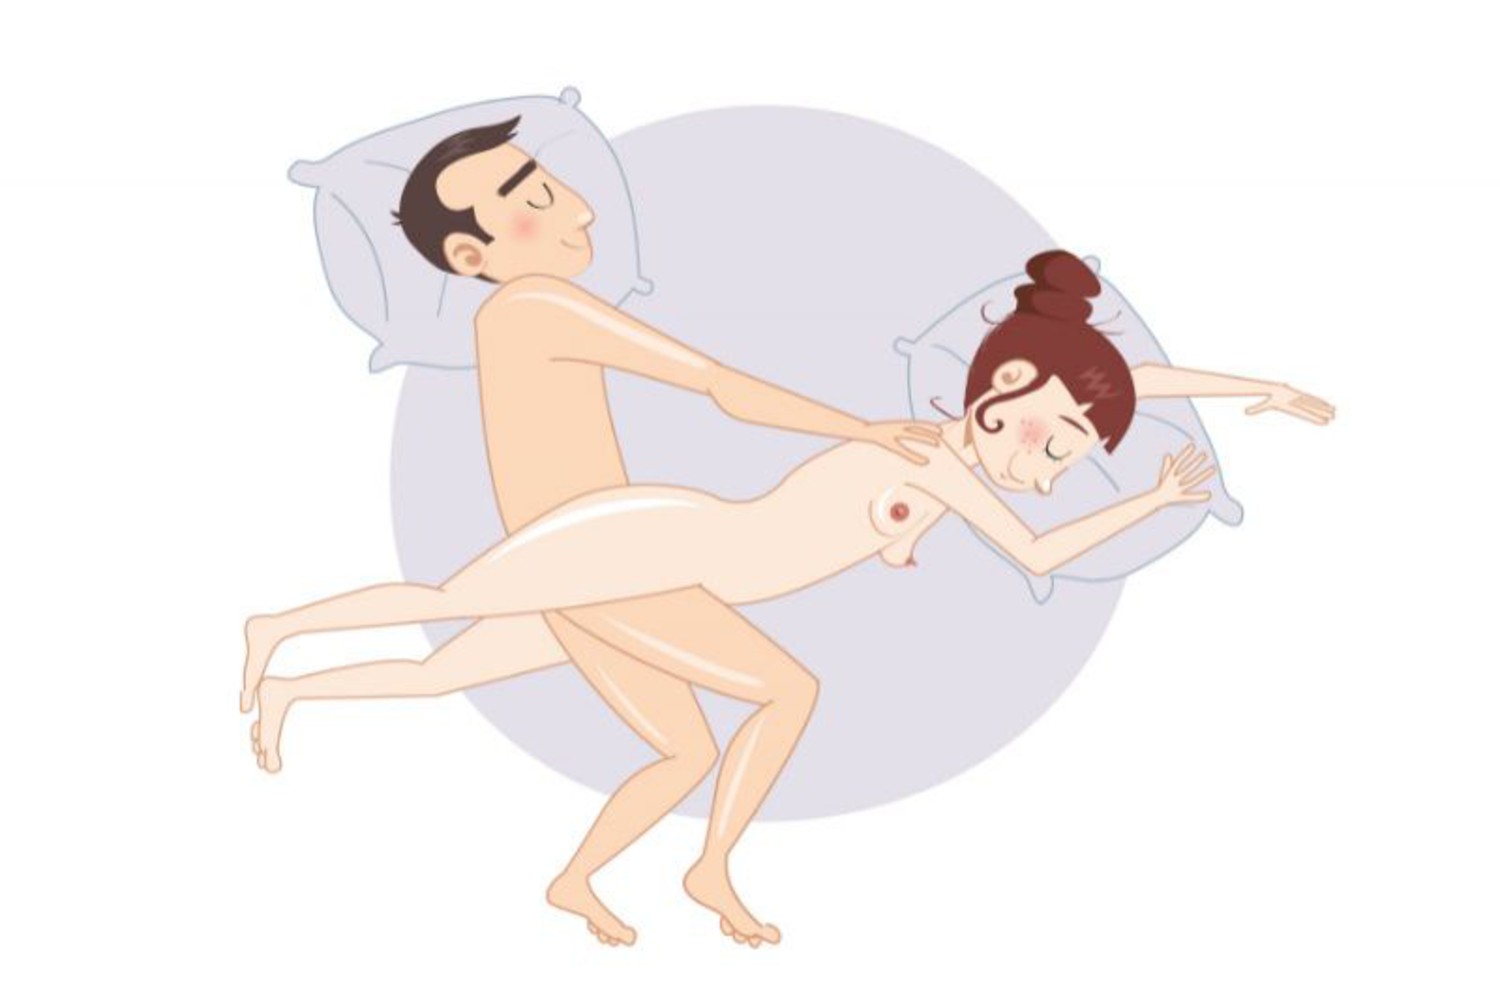 The Crisscross Sex Position